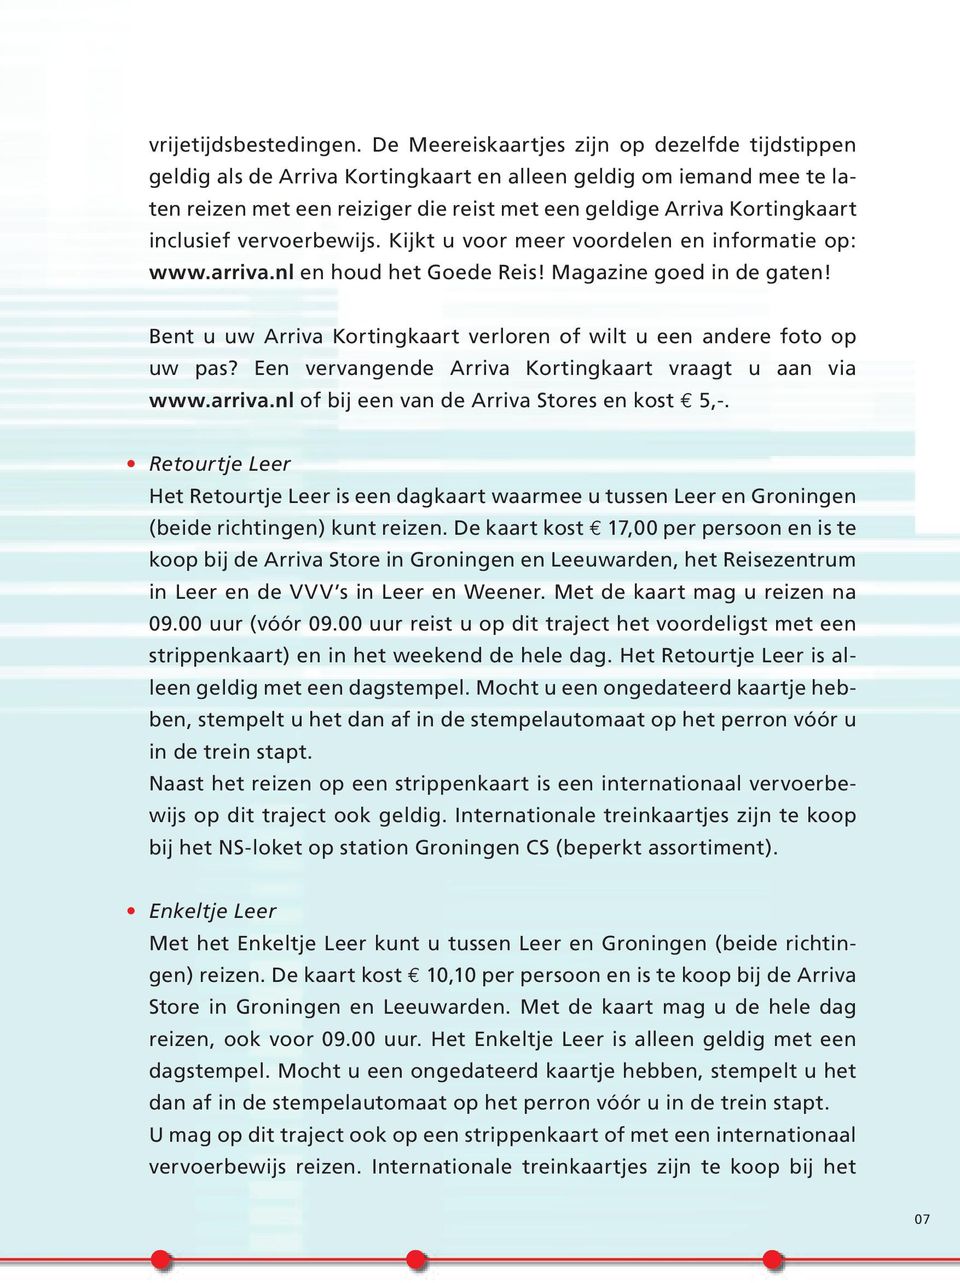 inclusief vervoerbewijs. Kijkt u voor meer voordelen en informatie op: www.arriva.nl en houd het Goede Reis! Magazine goed in de gaten!